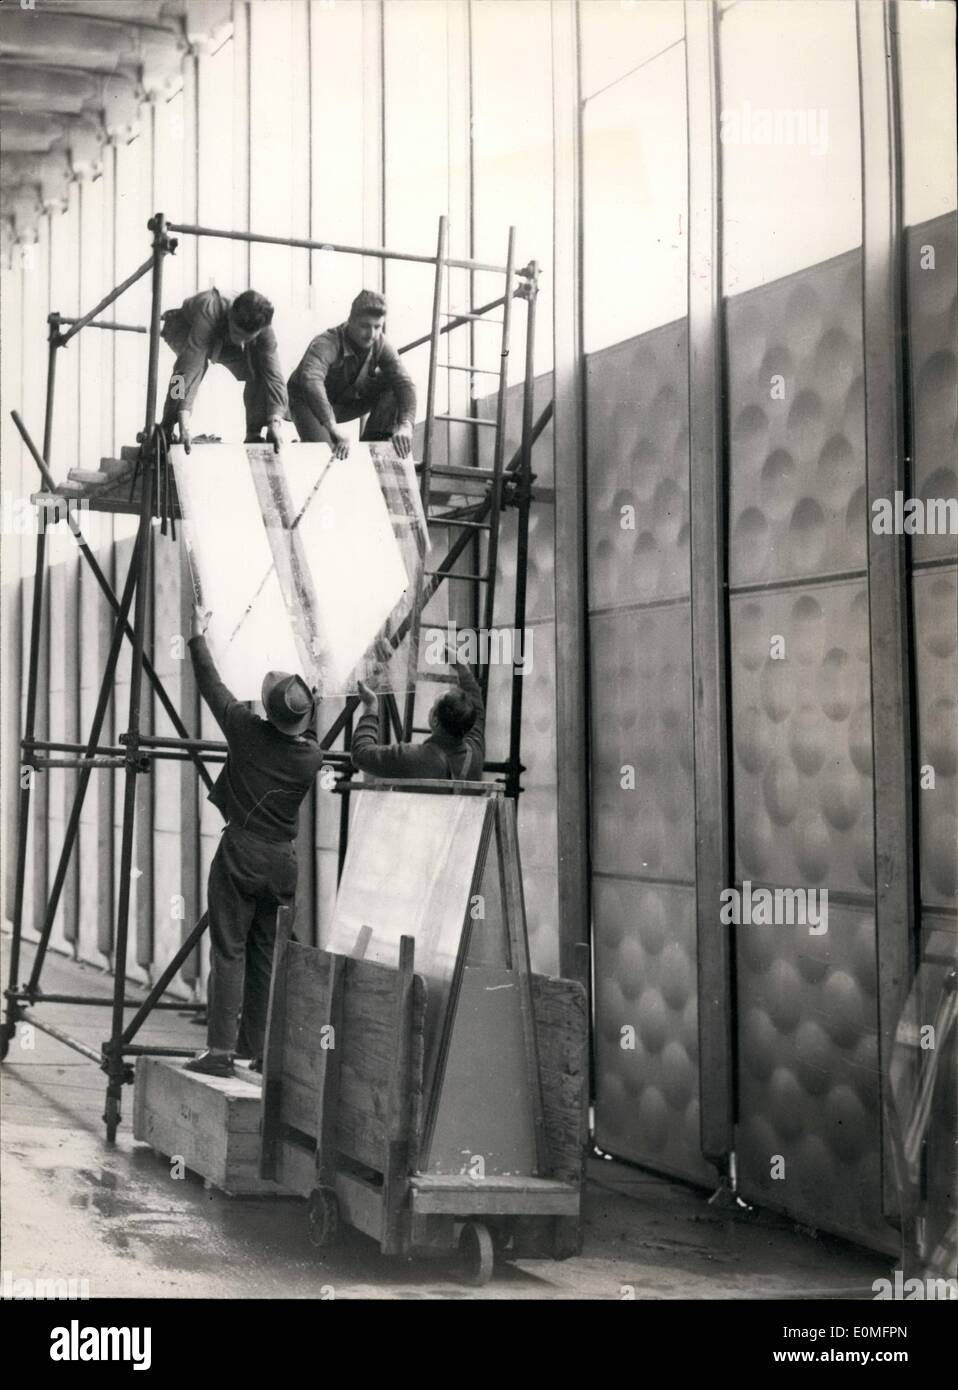 Mar. 03, 1955 - Une nouvelle exposition de l'aluminium sera bientôt ouvert le long du quai d'Orsay. Les spécialistes sont également en train de mettre en place un hangar qui est entièrement composé d'aluminium et de verre. Une chèvre dans une voiture. Banque D'Images